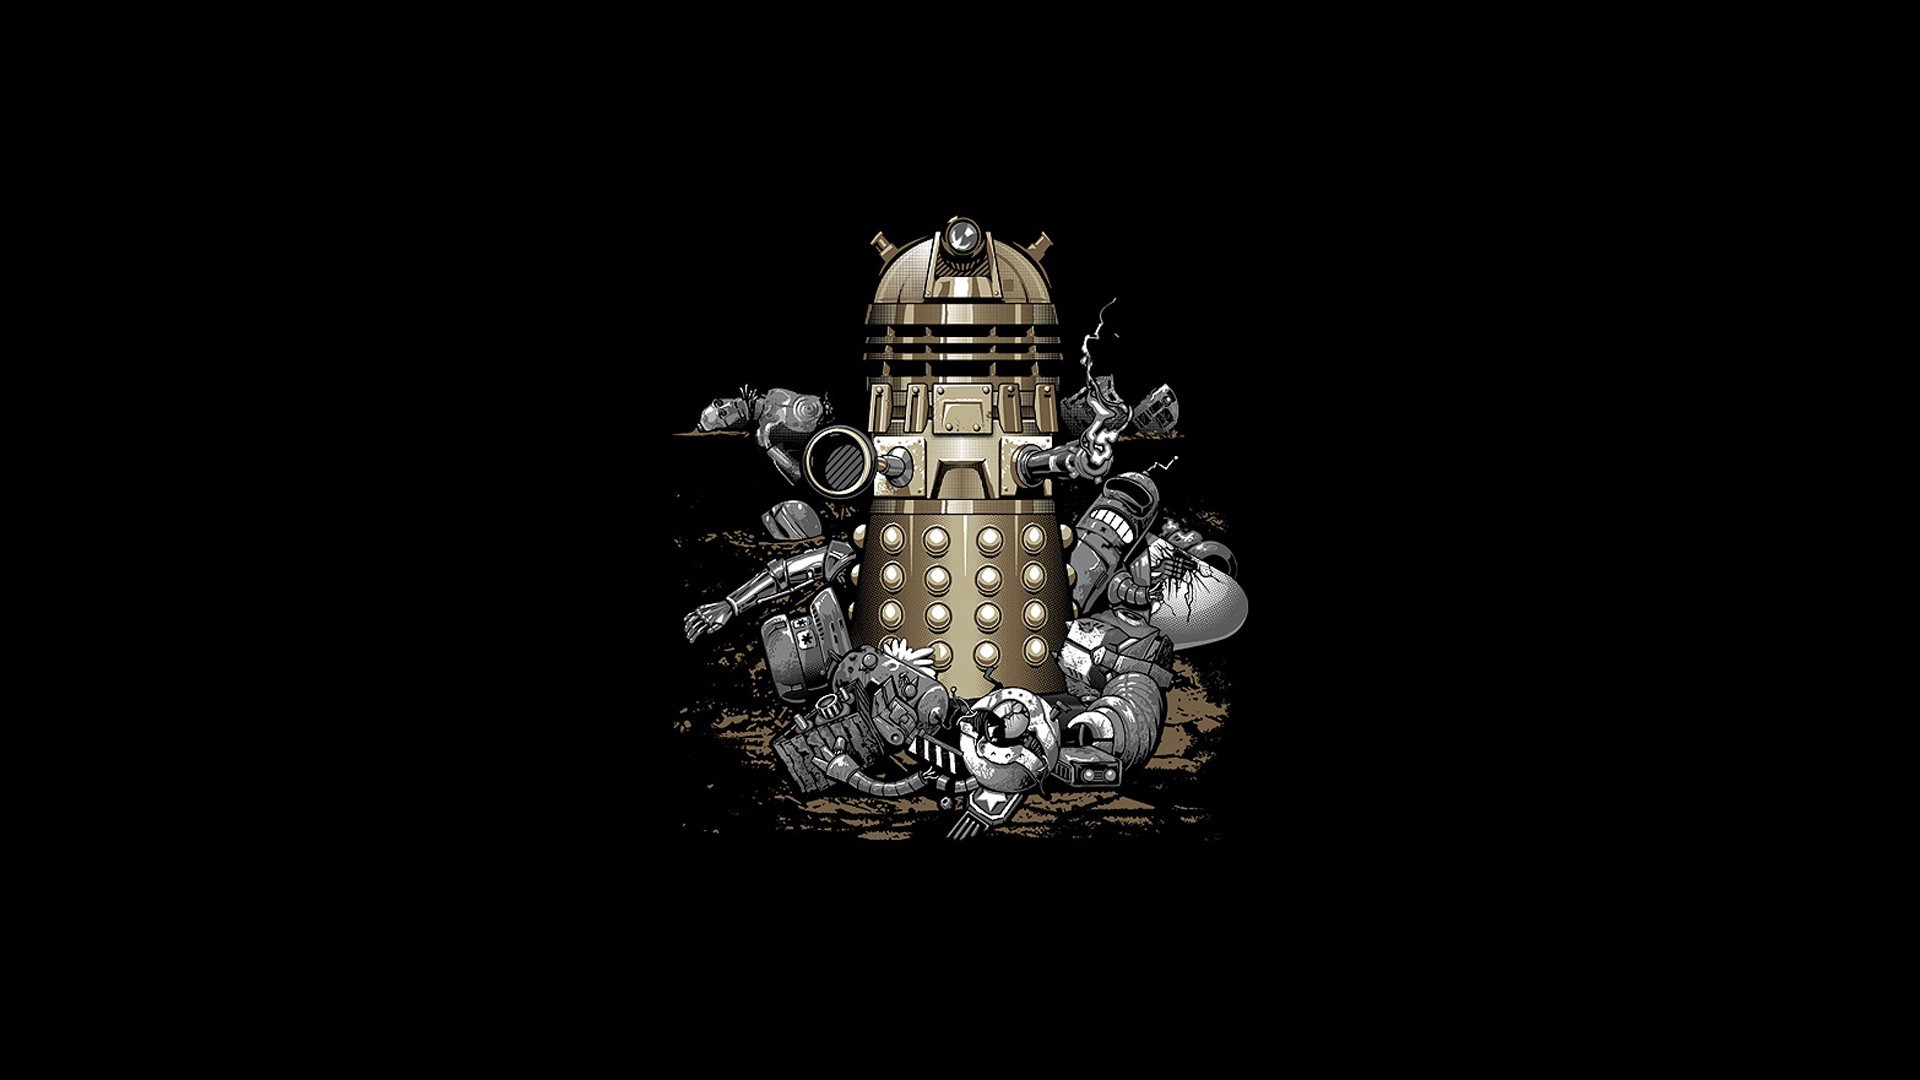 1920x1080 Dalek to Victory Wallpaper - WallpaperSafari | Adorable Wallpapers |  Pinterest | Dalek and Wallpaper